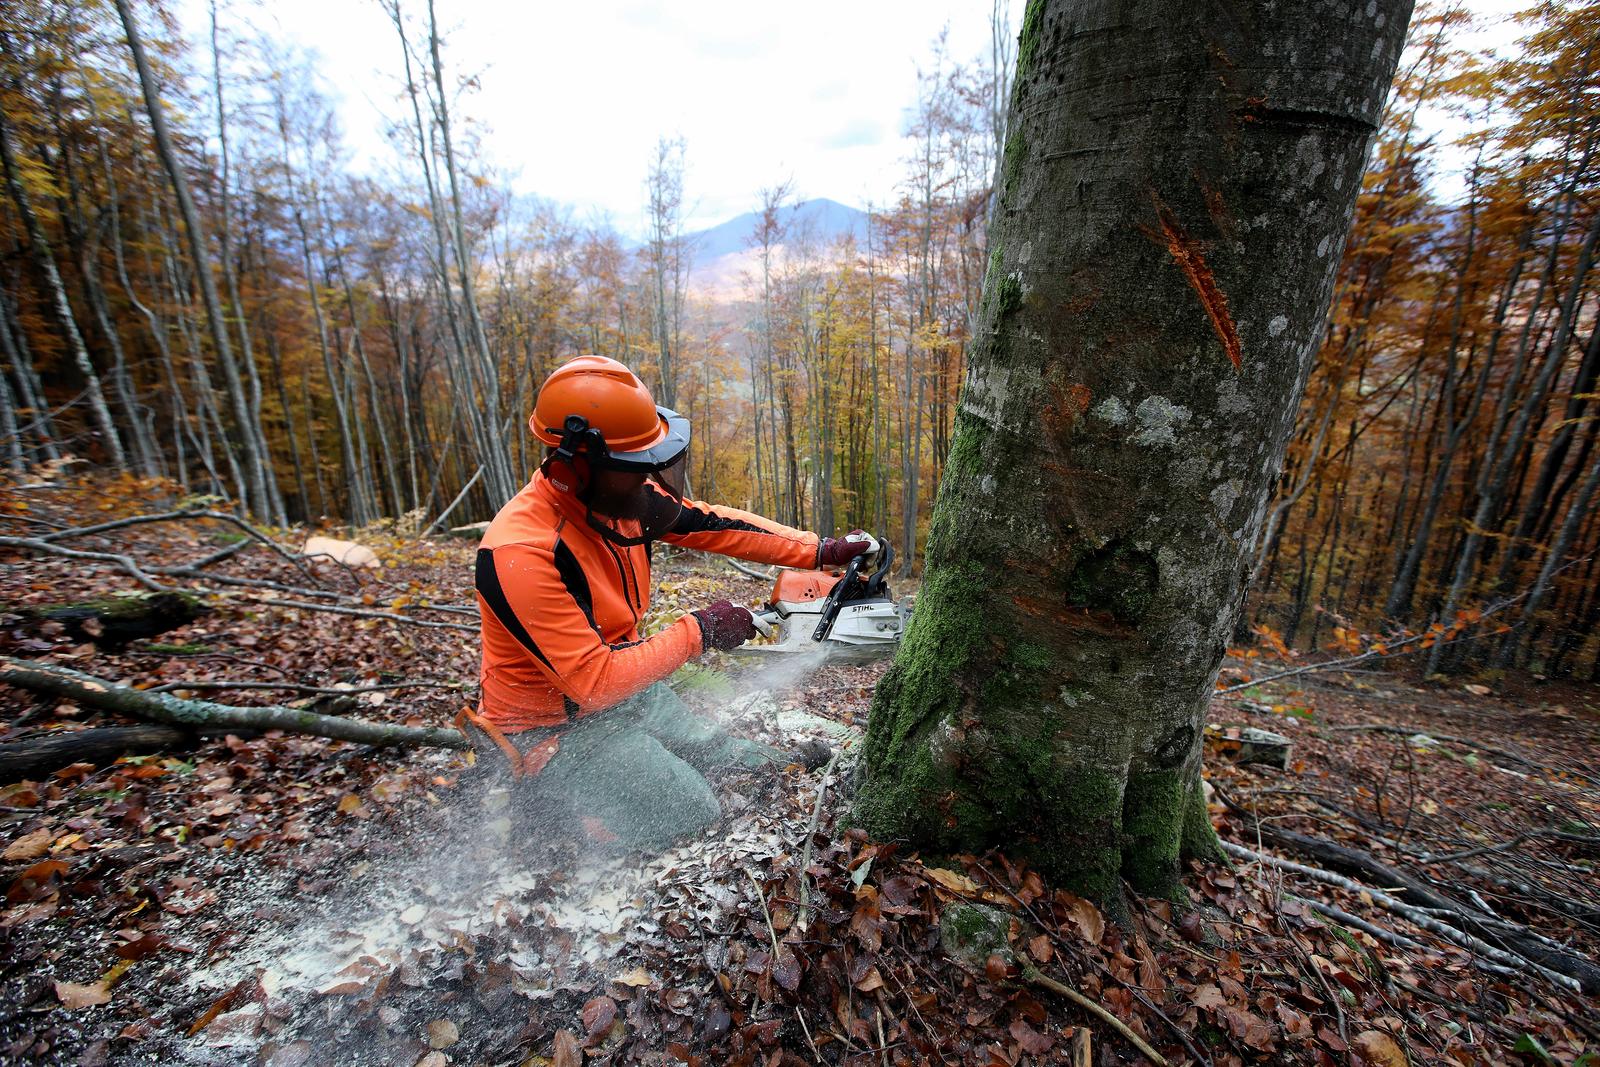 Srednja škola Delnice želi uvesti zanimanje šumarski tehničar, čeka se odgovor Ministarstva